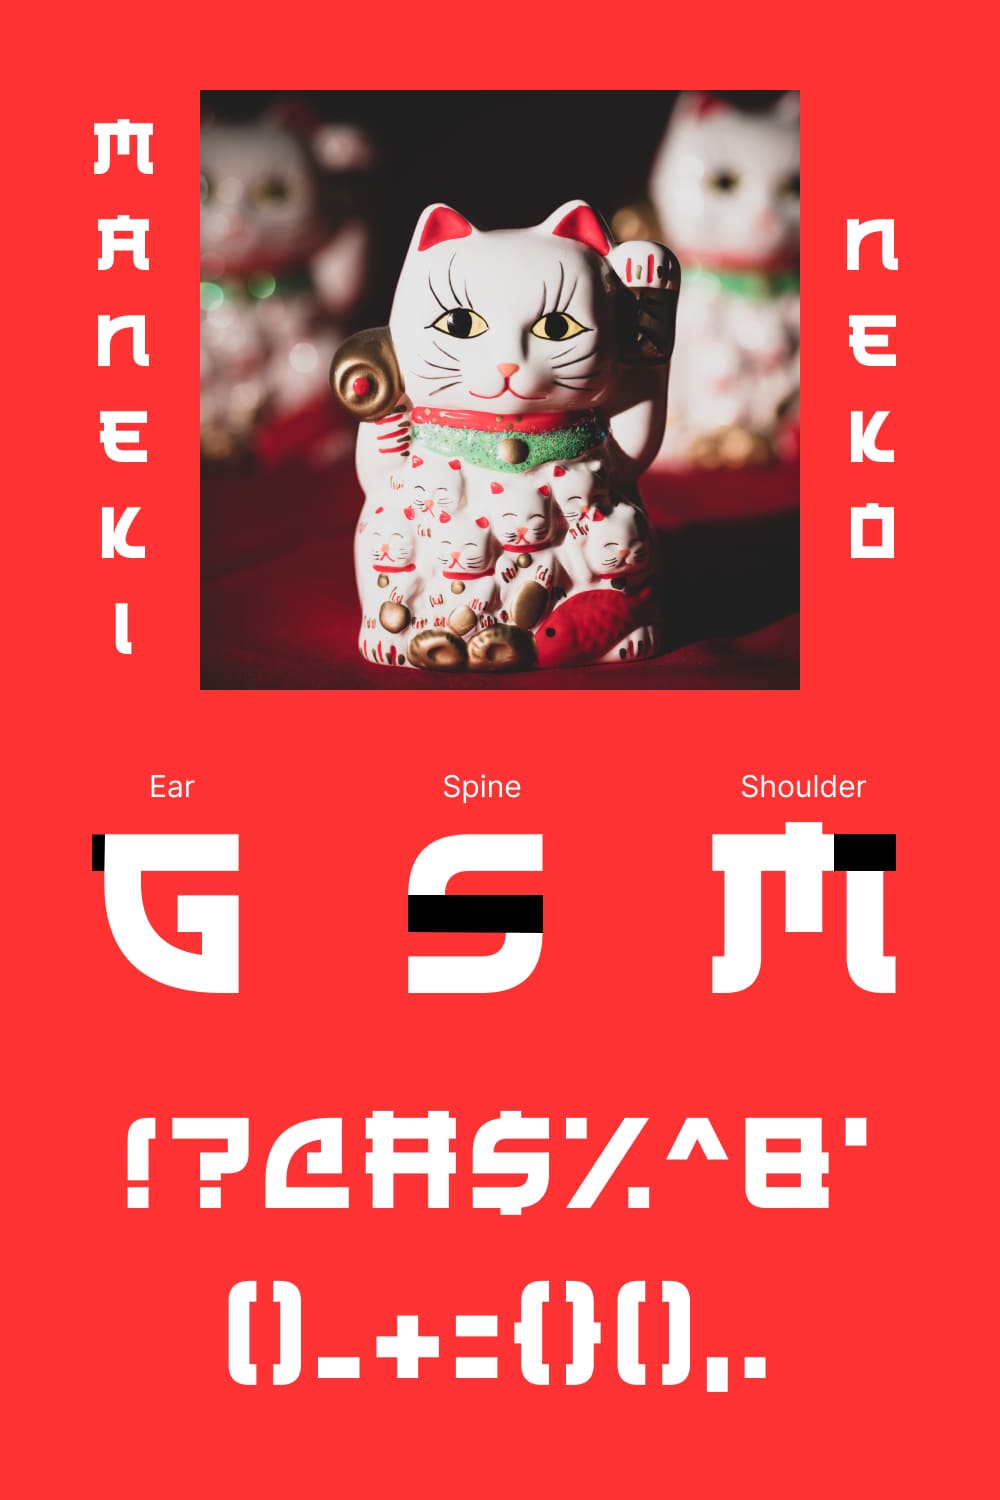 Free japanese font pinterest image.